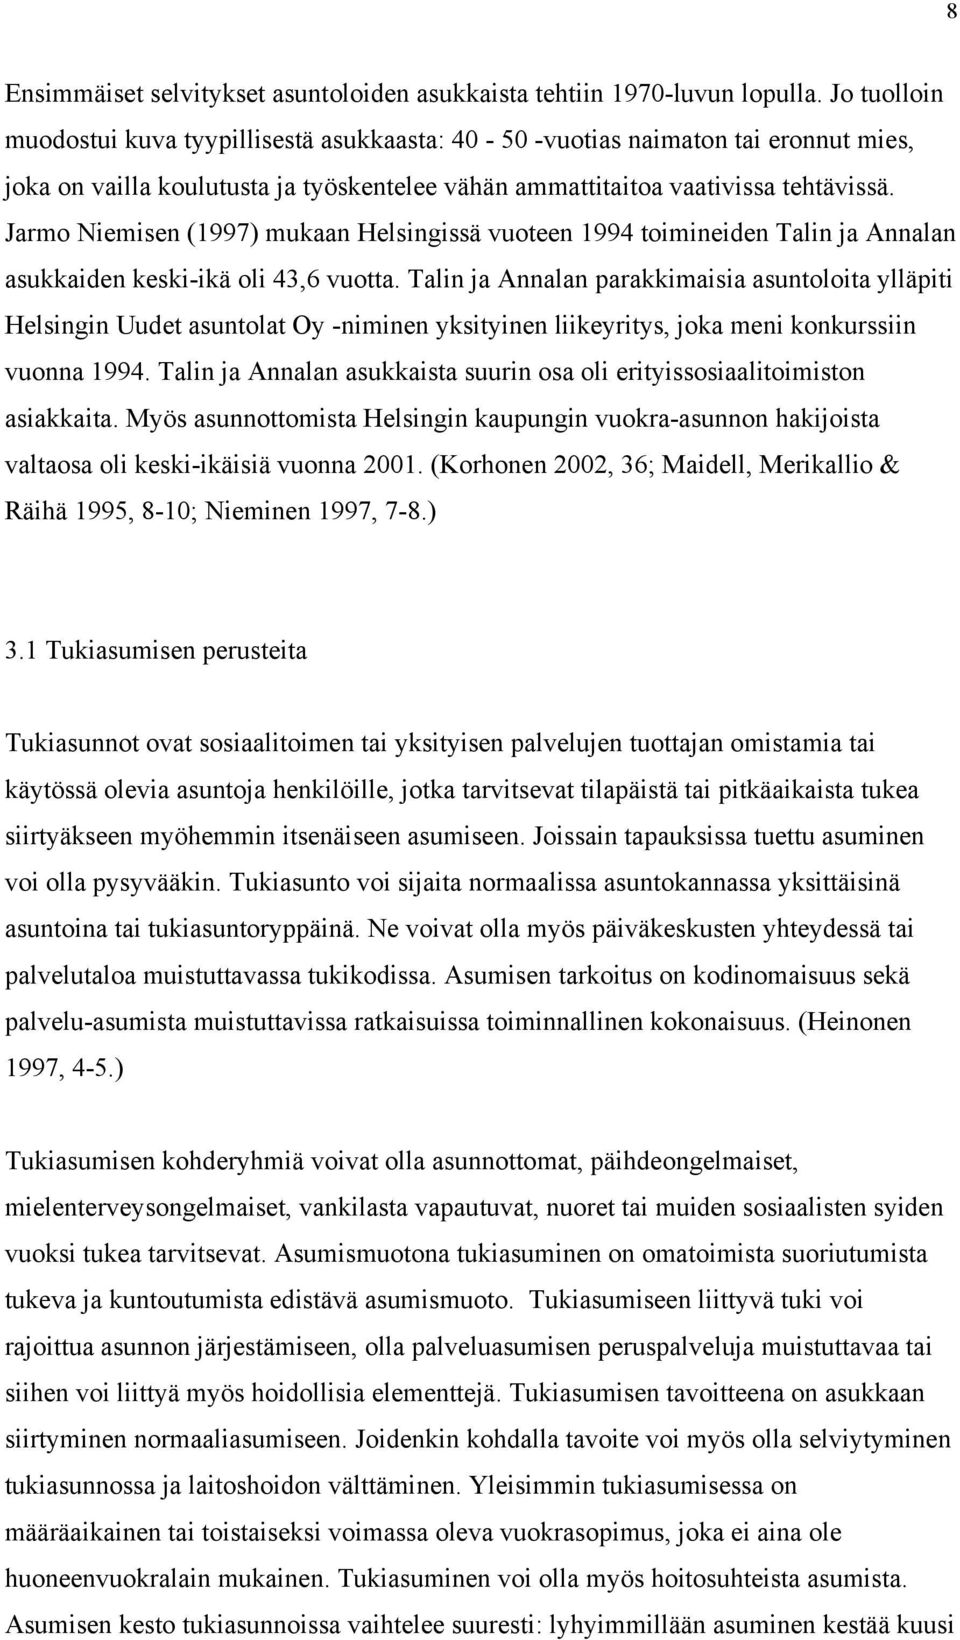 Jarmo Niemisen (1997) mukaan Helsingissä vuoteen 1994 toimineiden Talin ja Annalan asukkaiden keski-ikä oli 43,6 vuotta.